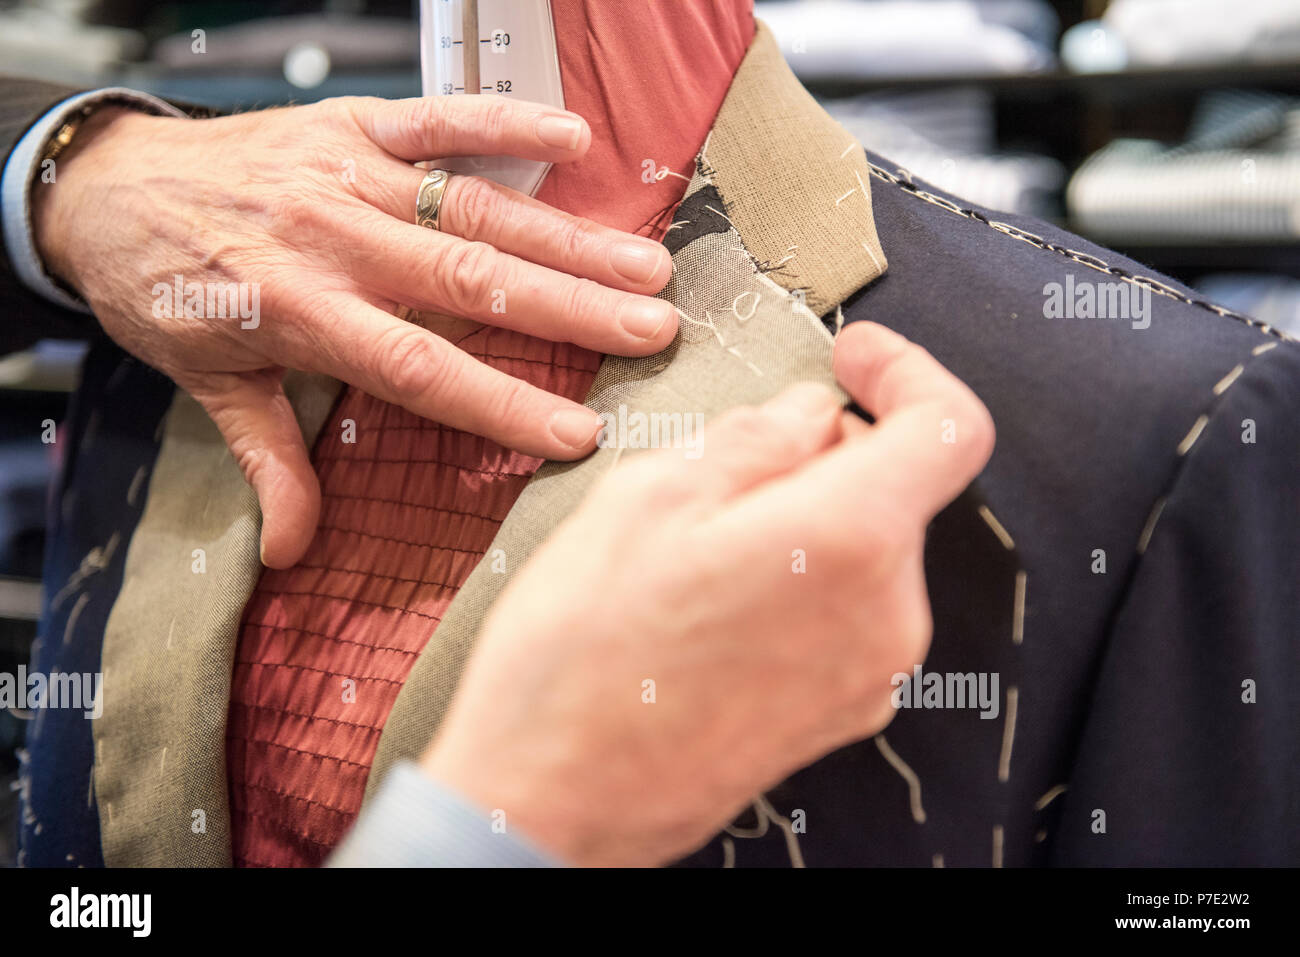 Veste de costume sur mesure sur mesure La préparation sur mannequin tailleurs, Close up of hands Banque D'Images